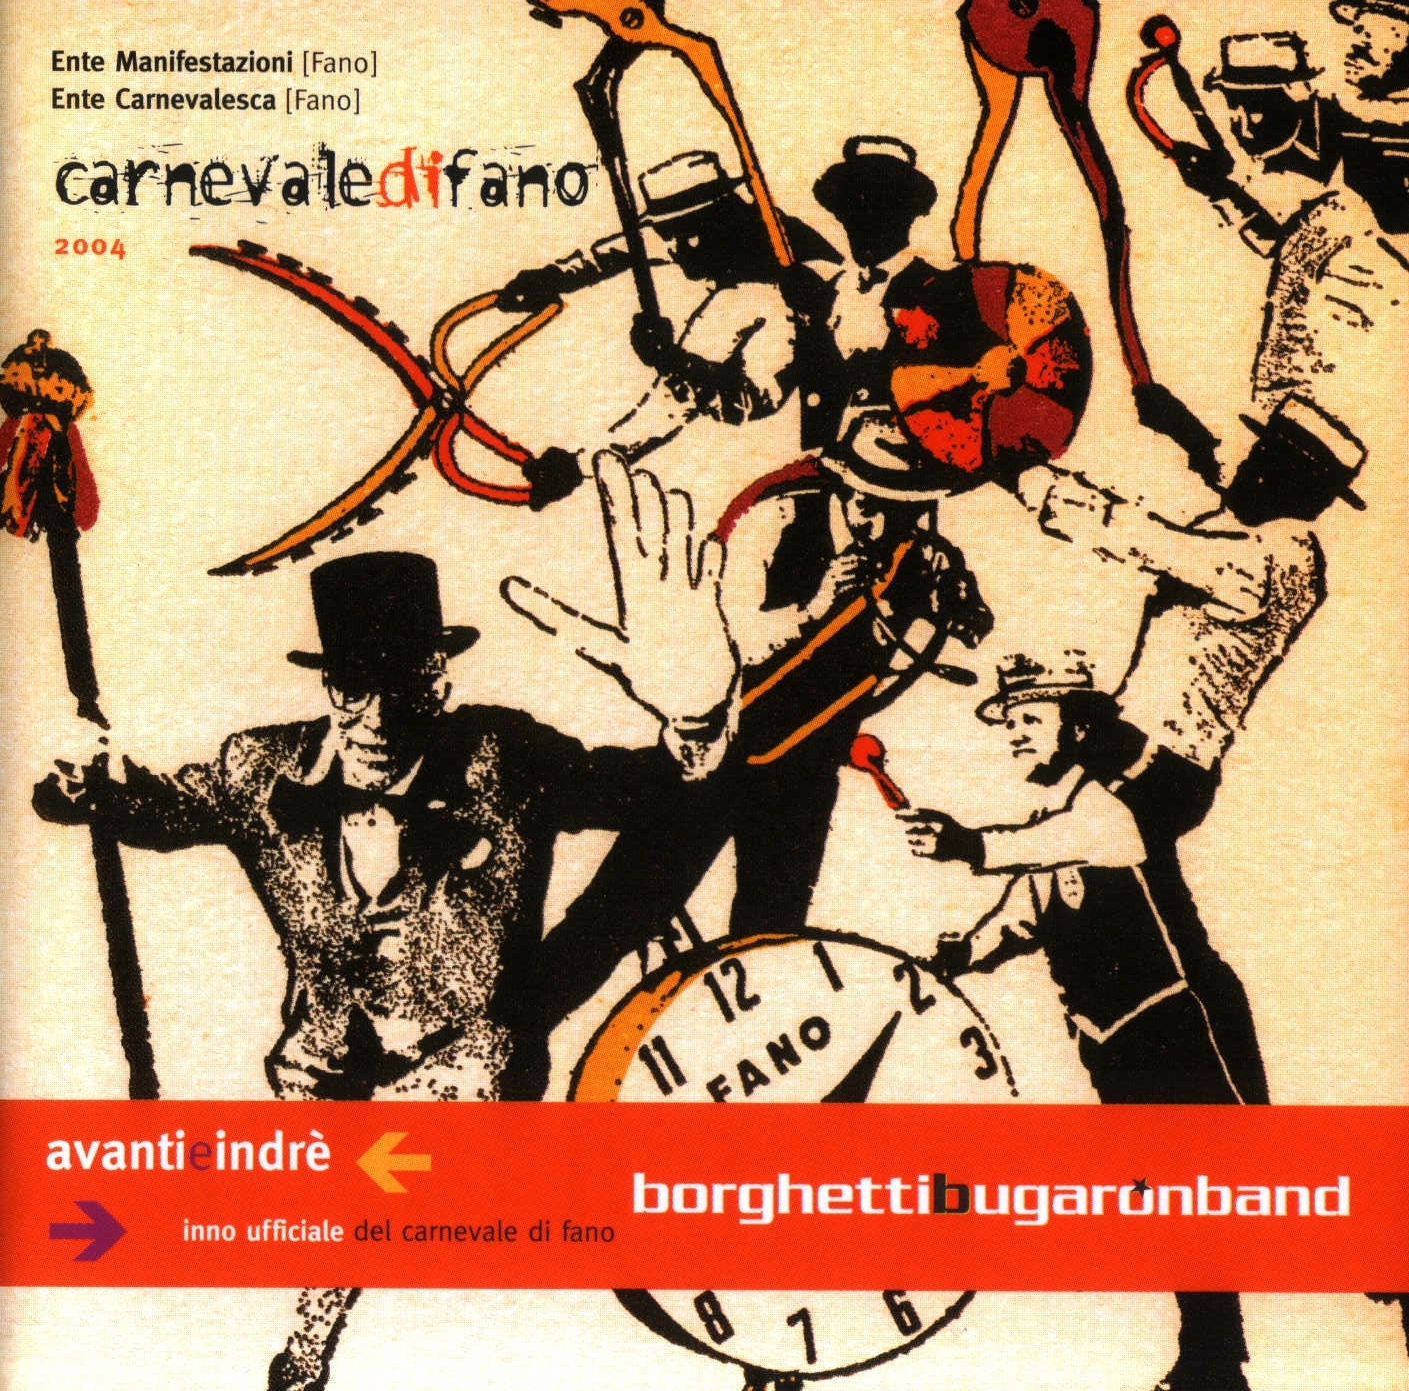 La copertina del singolo Avanti e indré della Borghetti Bugaron Band del 2004.